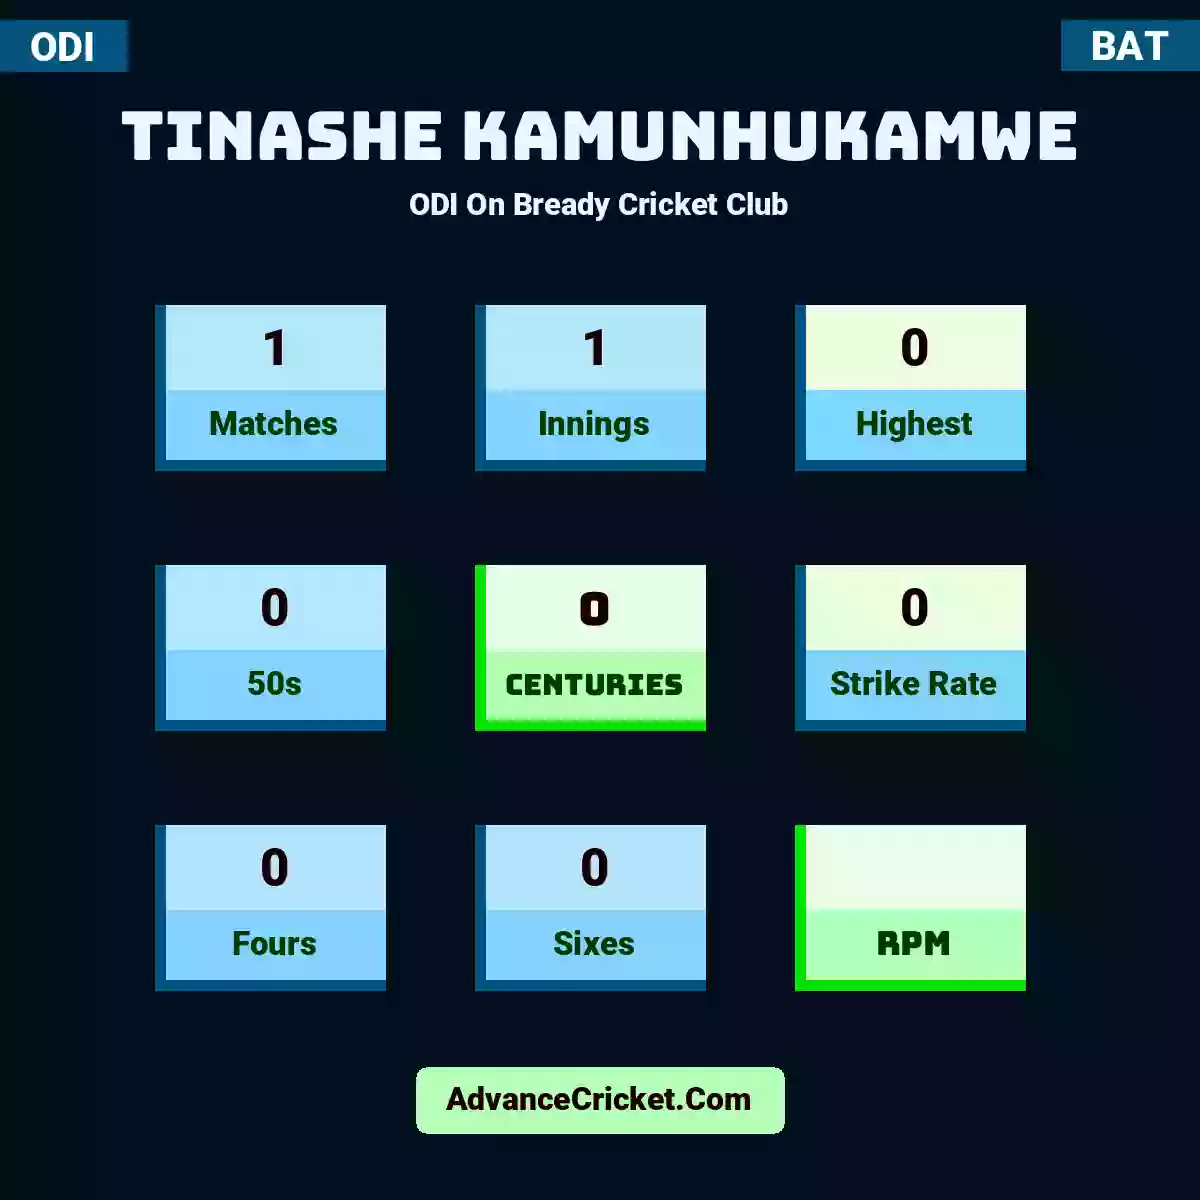 Tinashe Kamunhukamwe ODI  On Bready Cricket Club, Tinashe Kamunhukamwe played 1 matches, scored 0 runs as highest, 0 half-centuries, and 0 centuries, with a strike rate of 0. T.Kamunhukamwe hit 0 fours and 0 sixes.